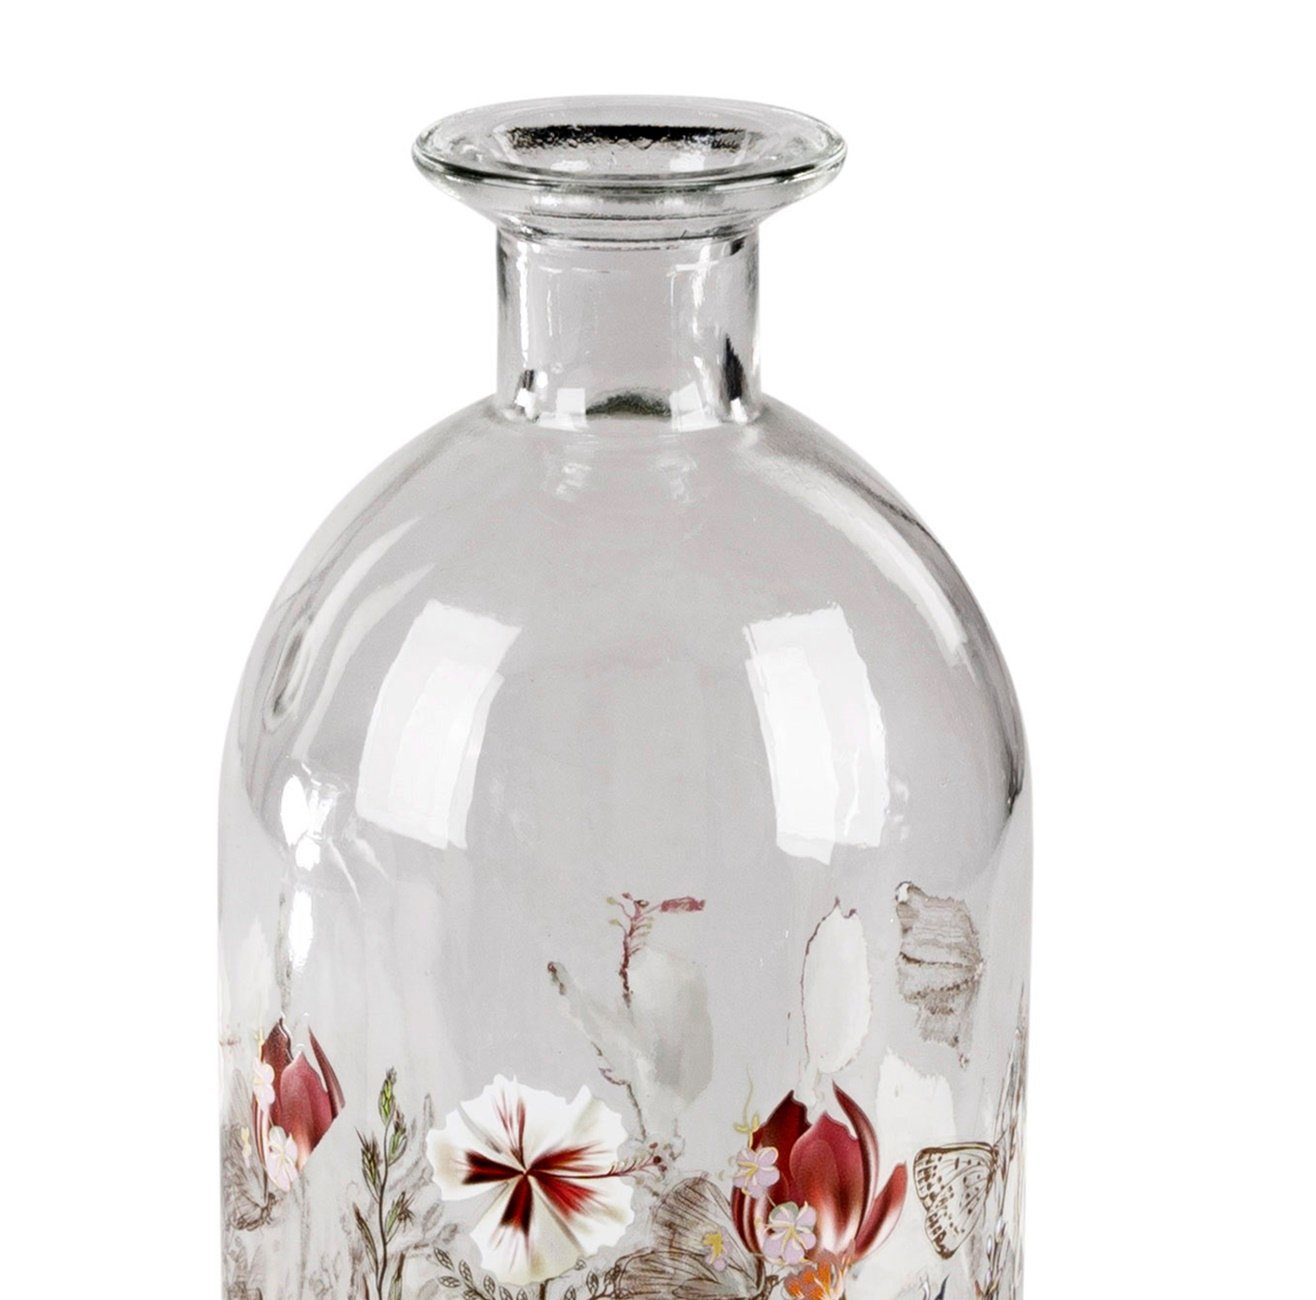 Glasvase dekojohnson Deko-Vase-Flasche Blumenvase Dekovase (Keines) 26cm